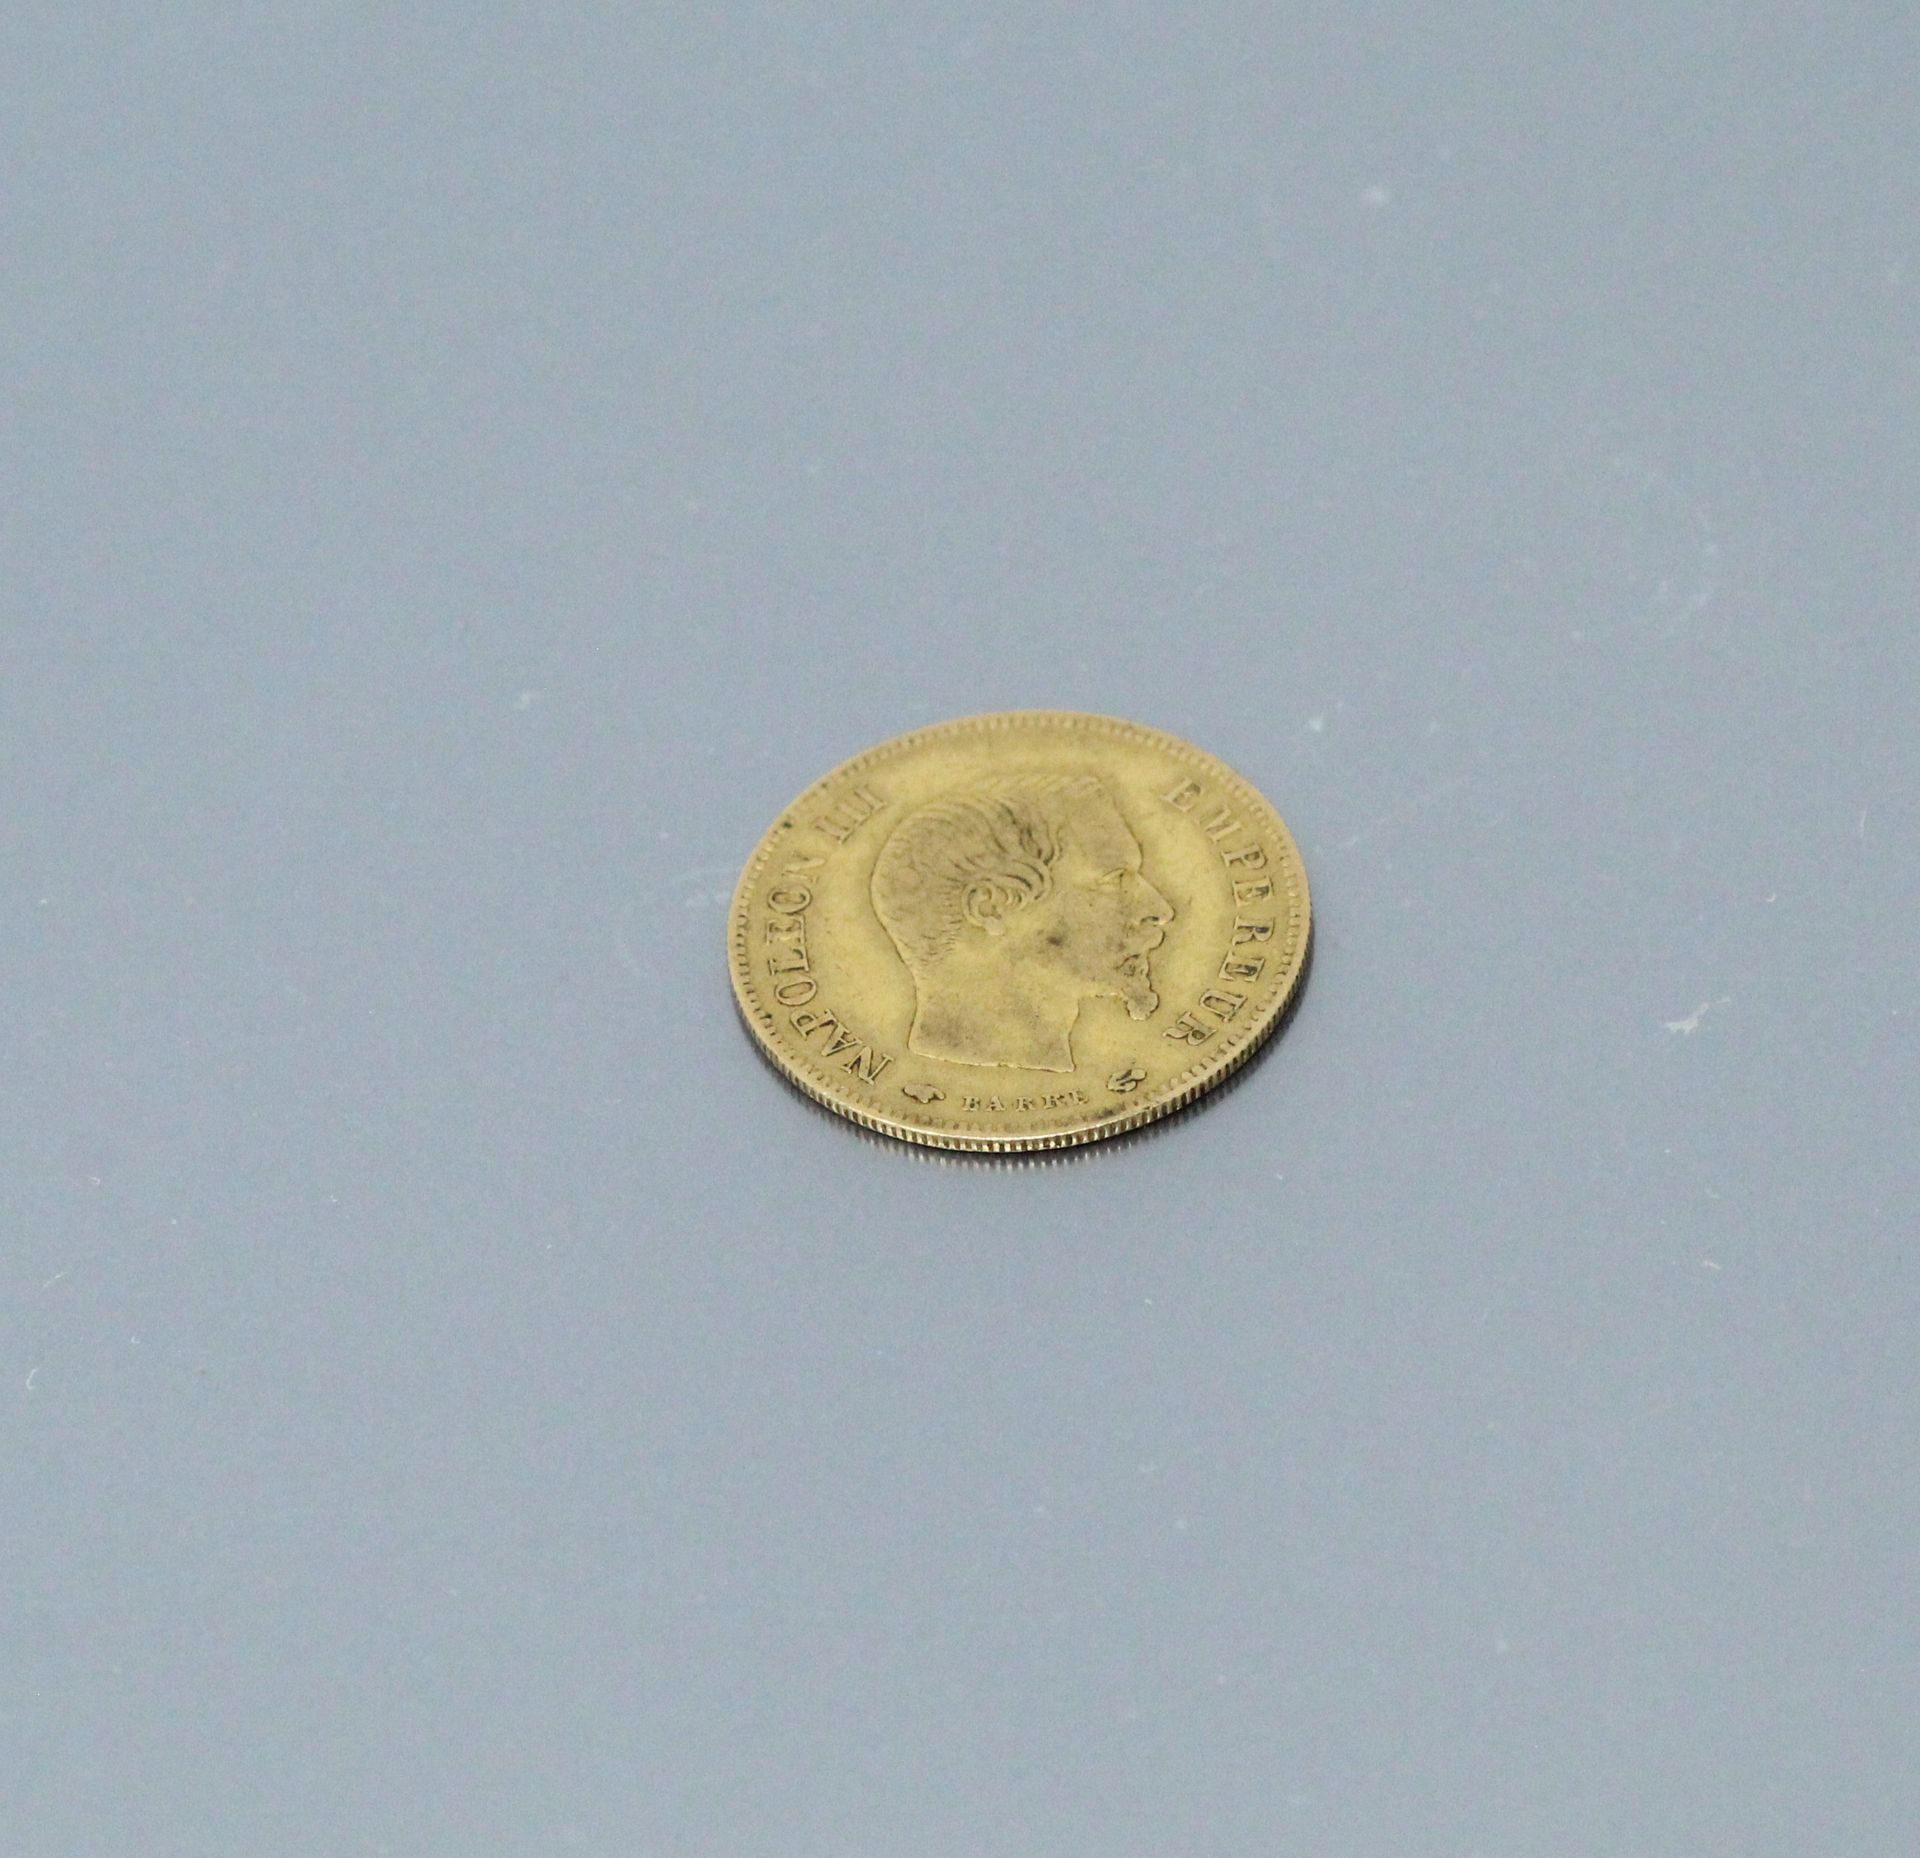 Null 10法郎拿破仑三世裸头黄金币(1857 A)

重量：3.20克。